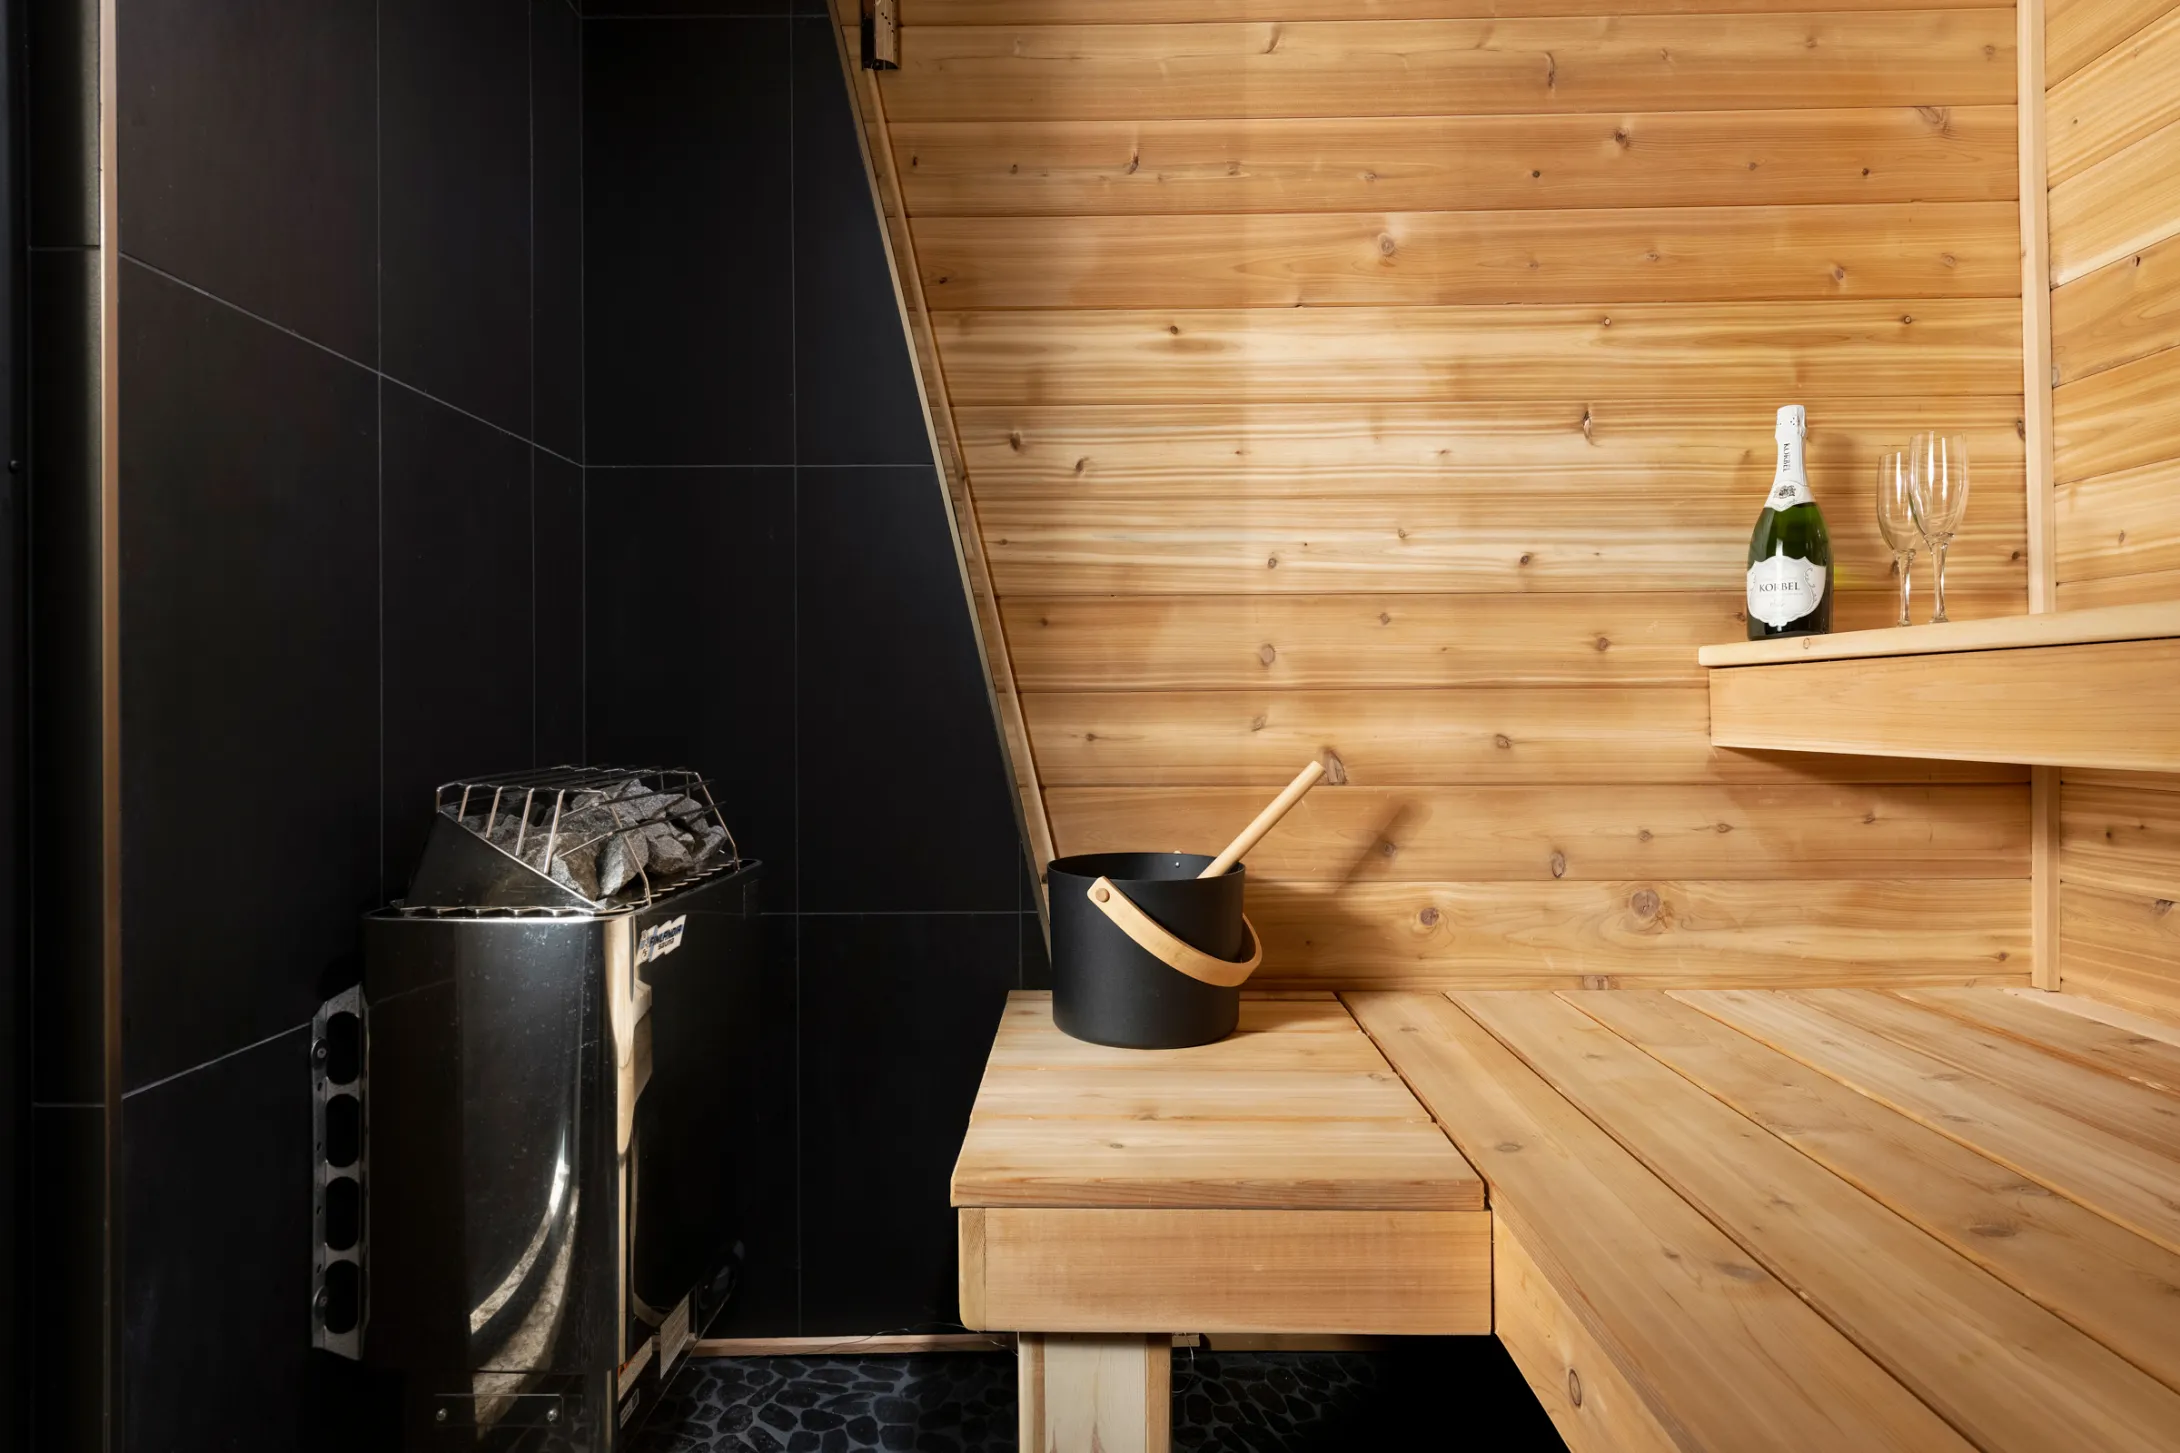 Basement bathroom sauna Finishing white birch design